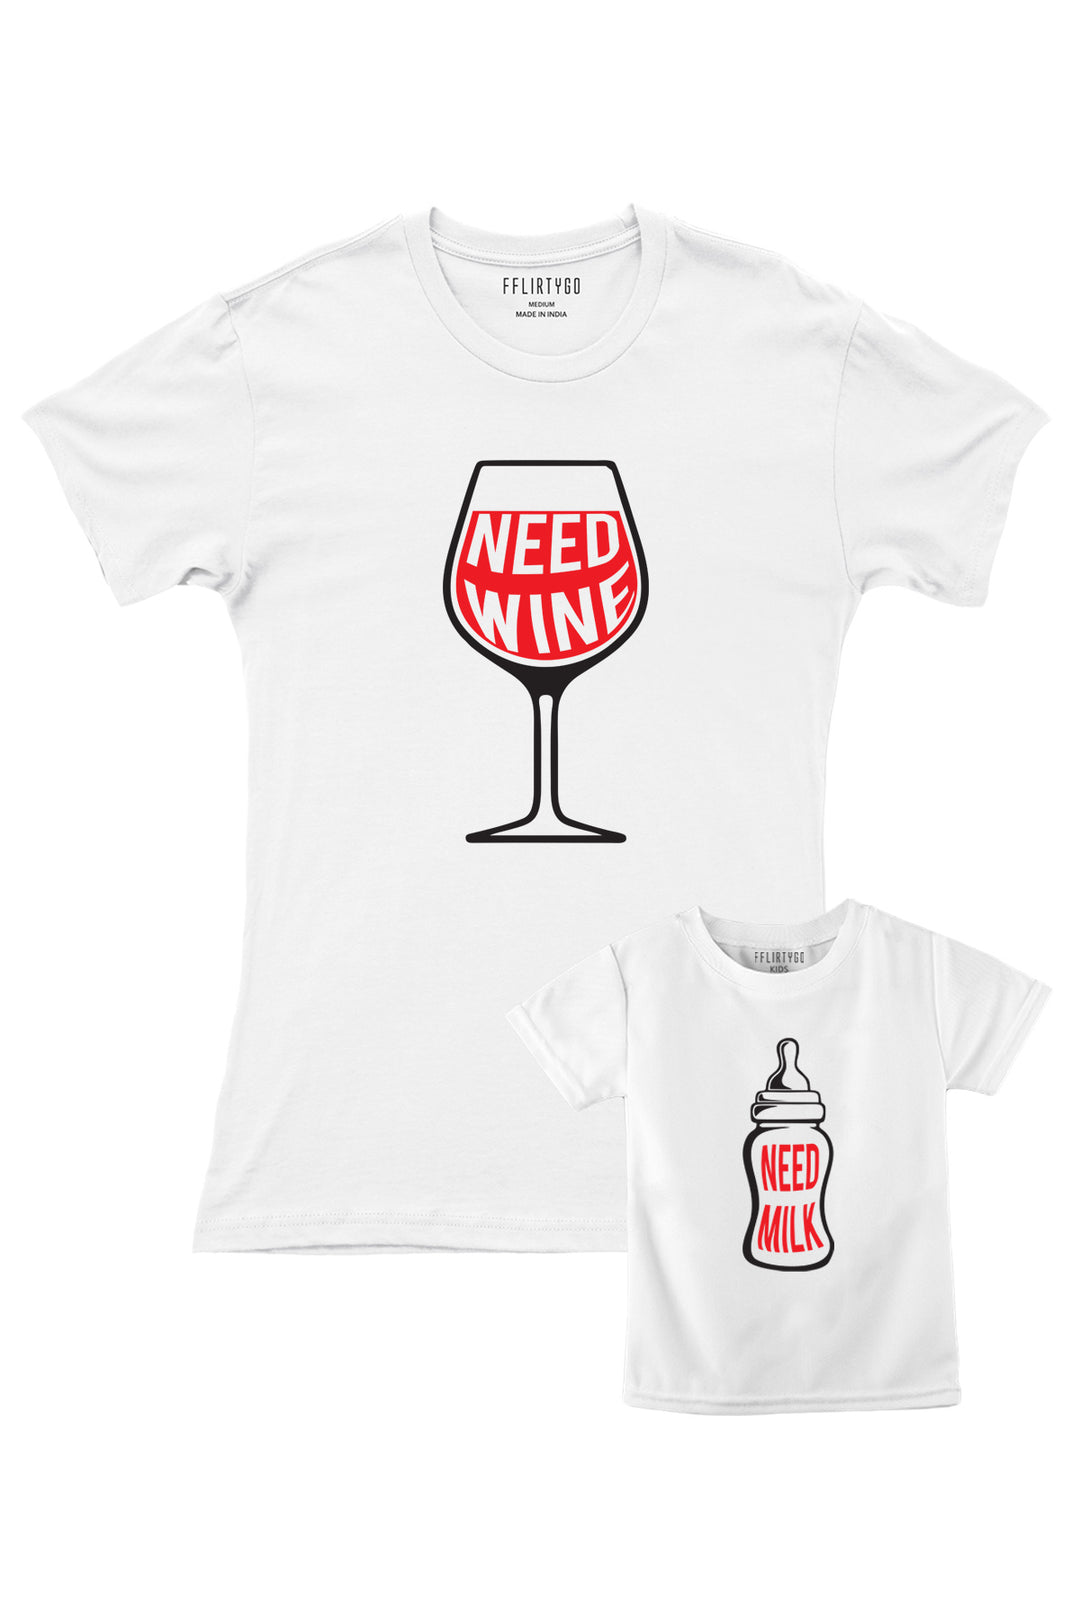 Need Wine - Need Milk